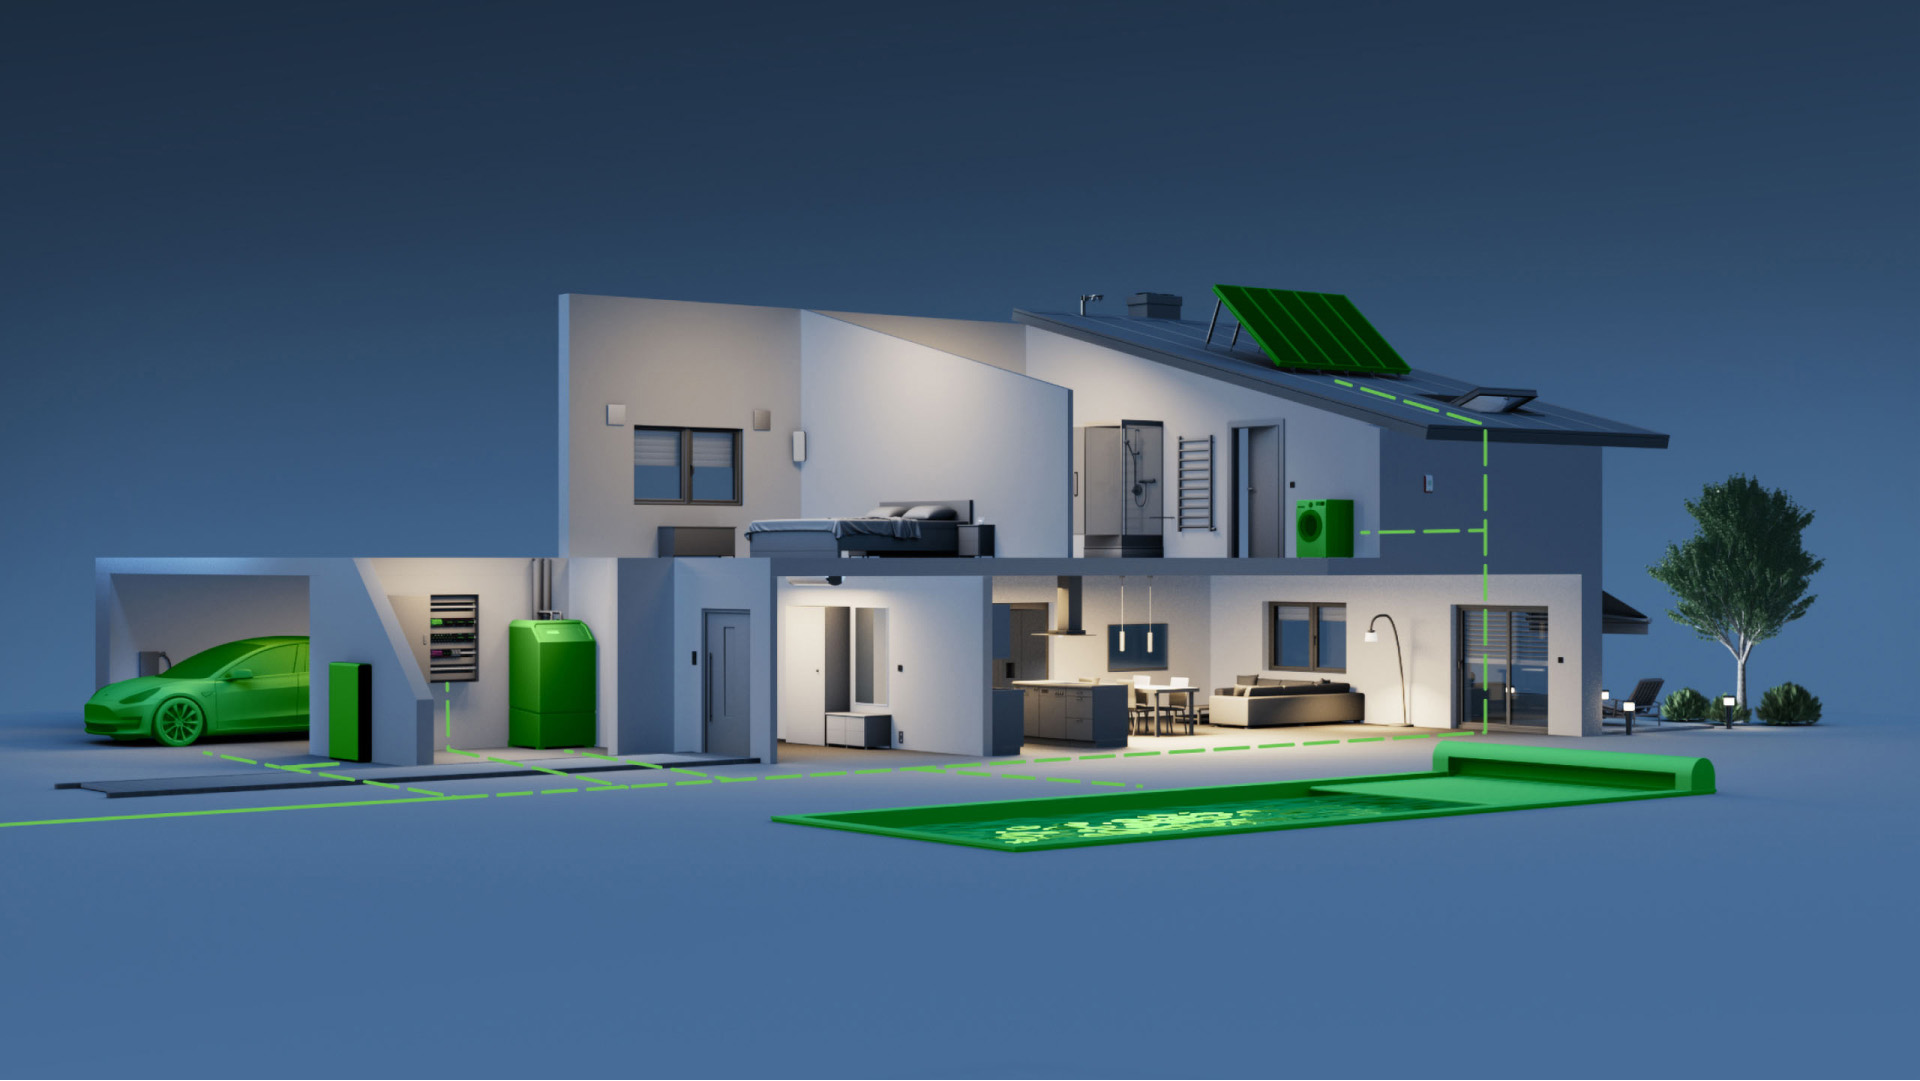 Wizualizacja domu, na której widać integrację z systemem zarządzania energią.